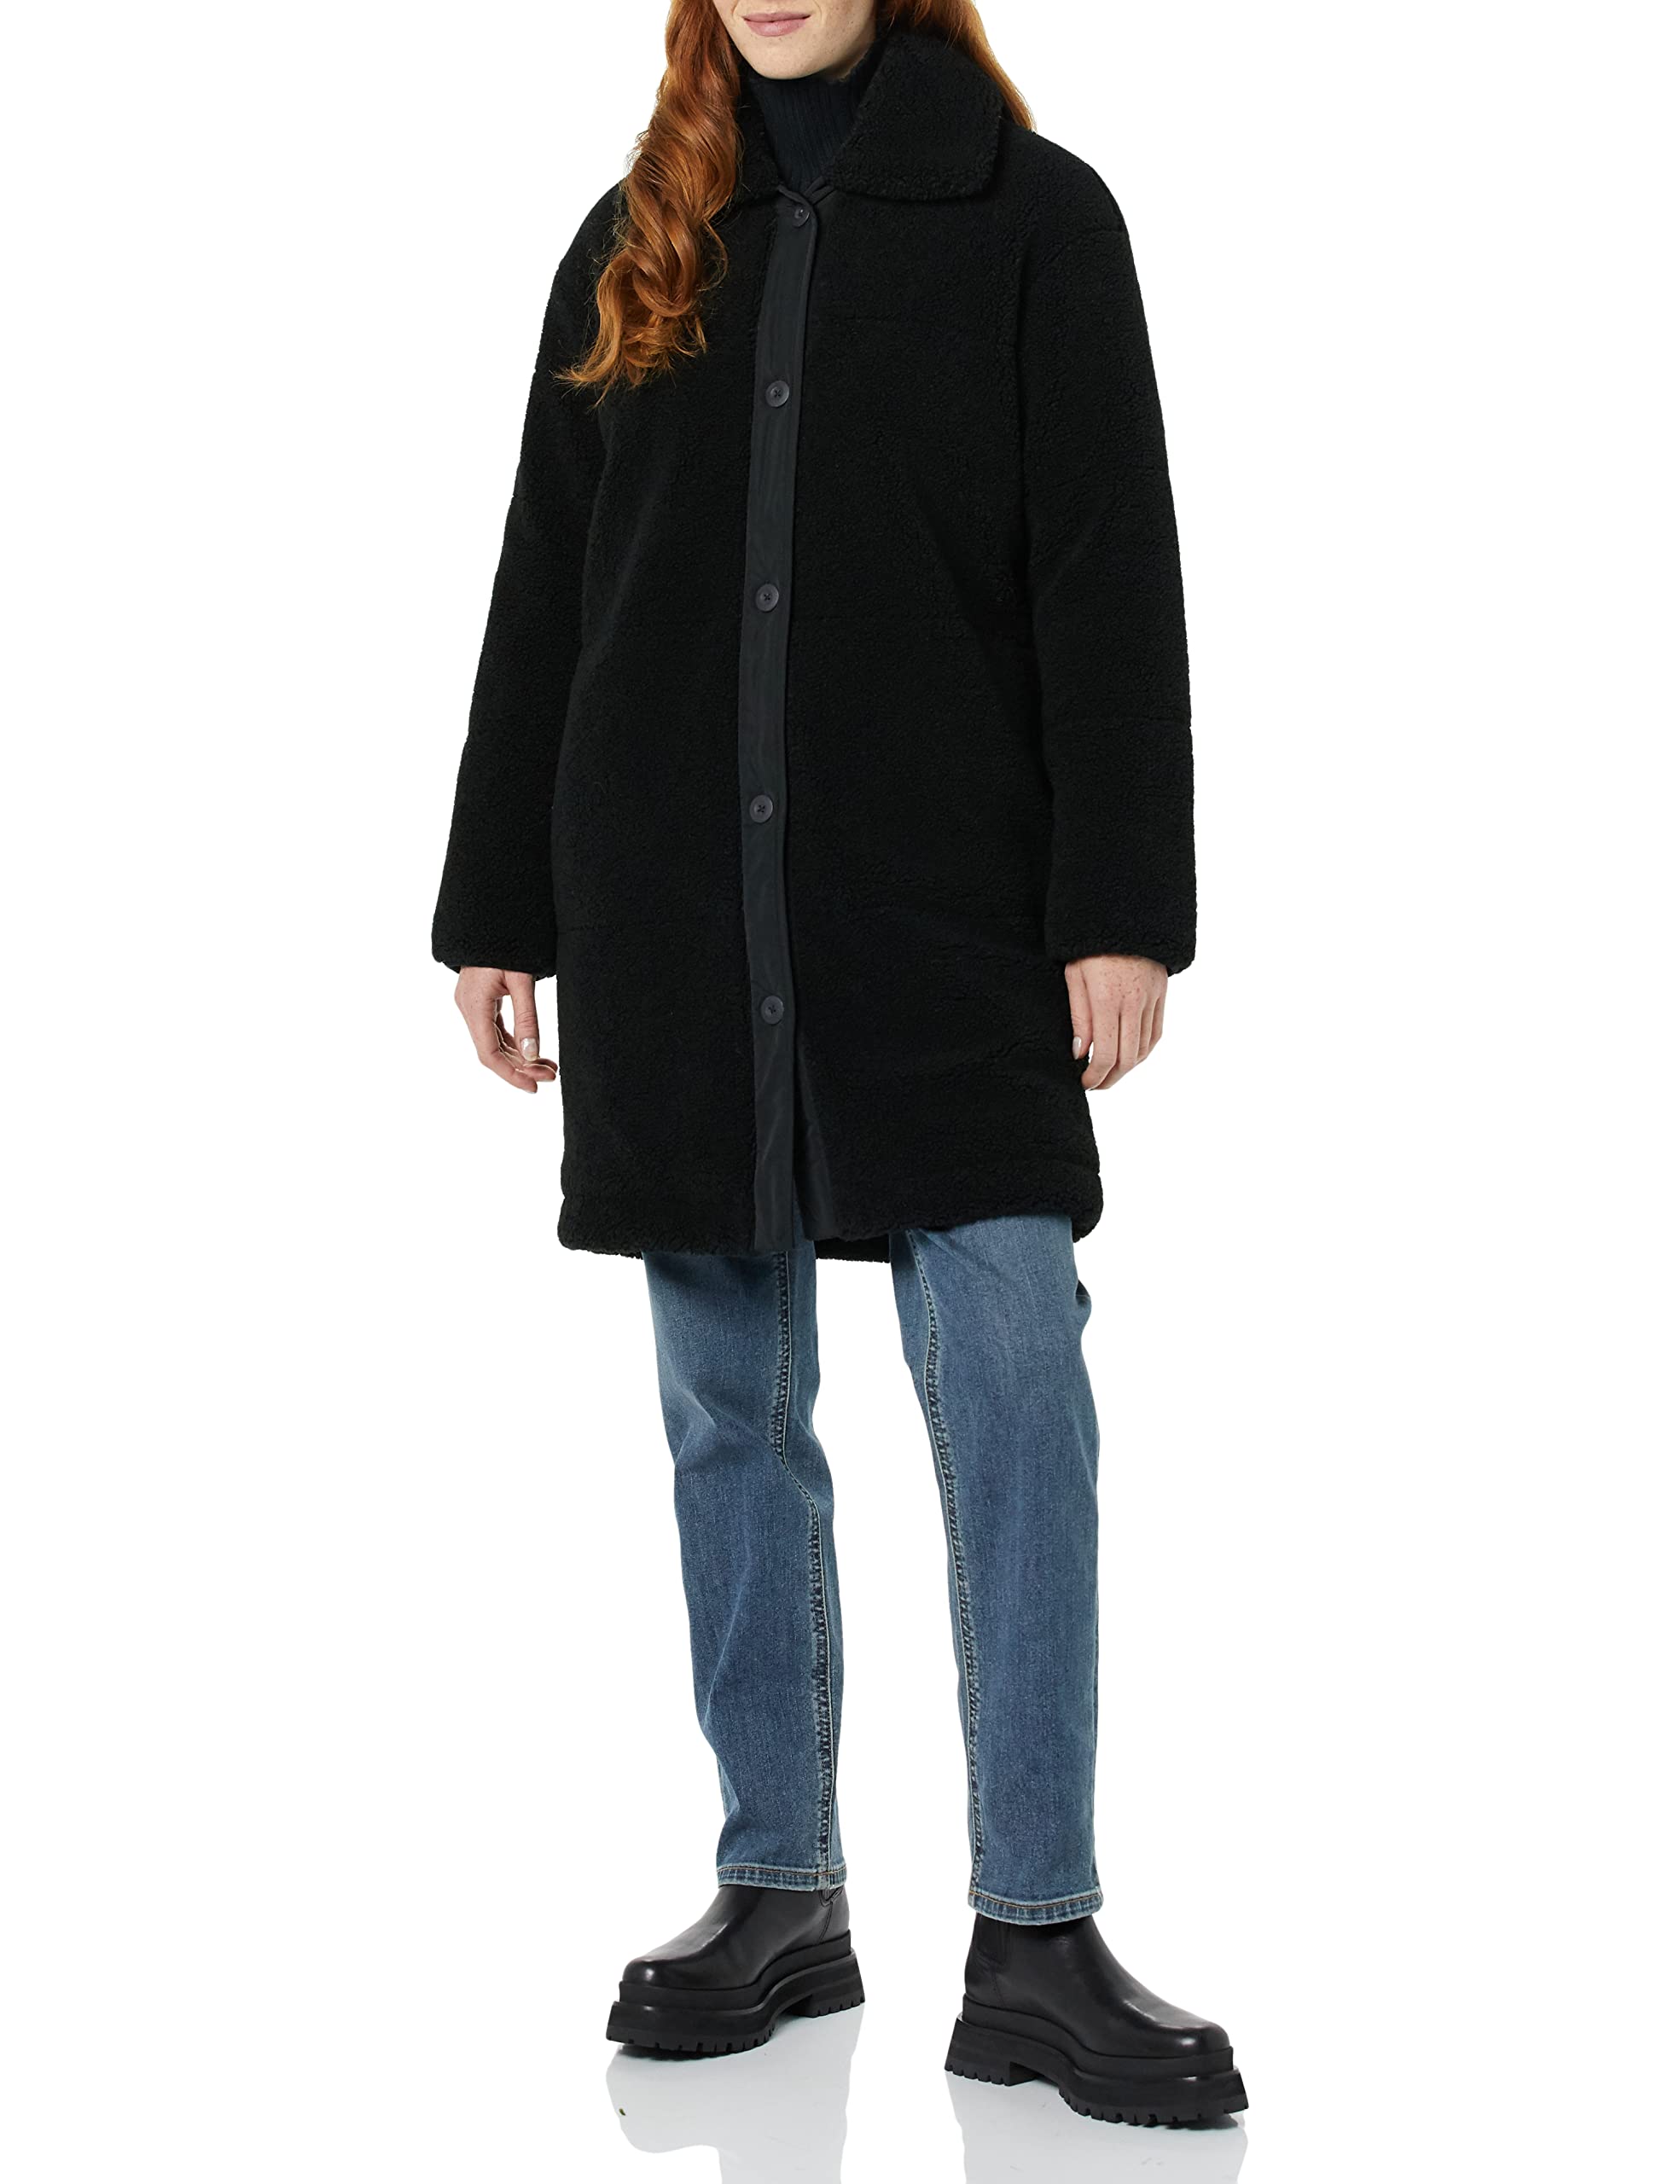 Goodthreads Women's Oversized Teddy Sherpa Coat